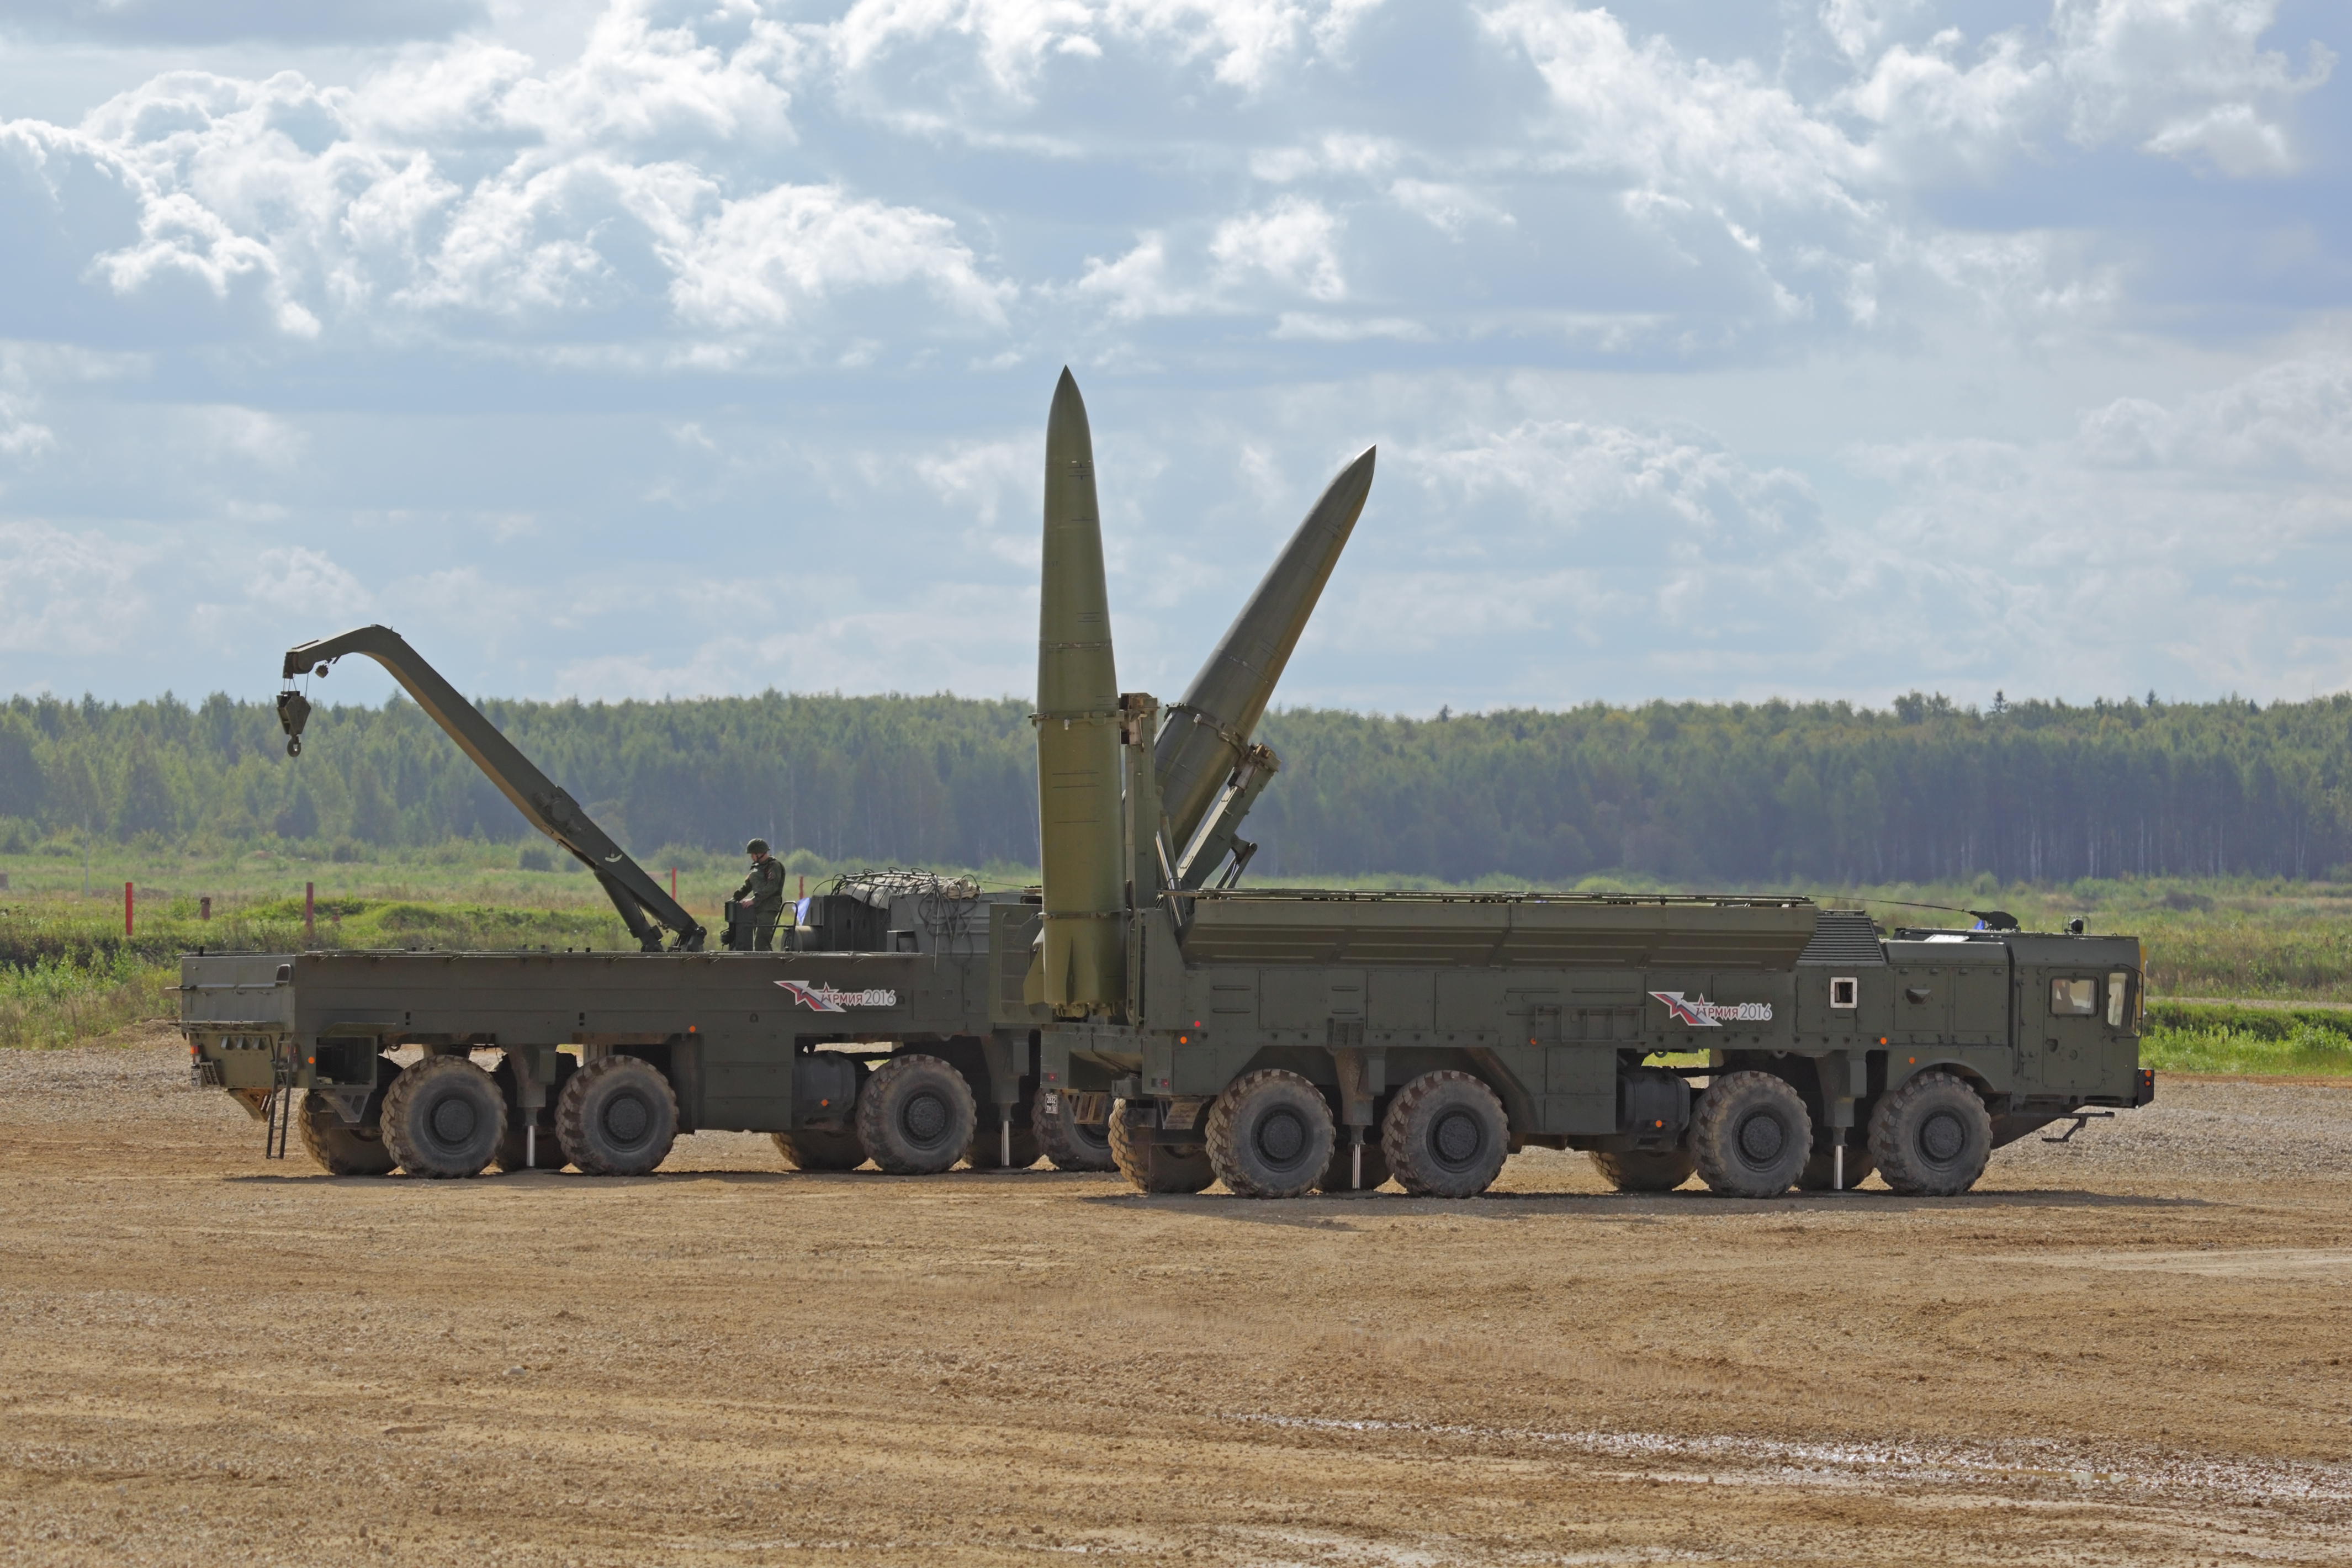 Руски издания твърдят, че ракетната система ”Искандер” е практически непроследима за американската ПРО